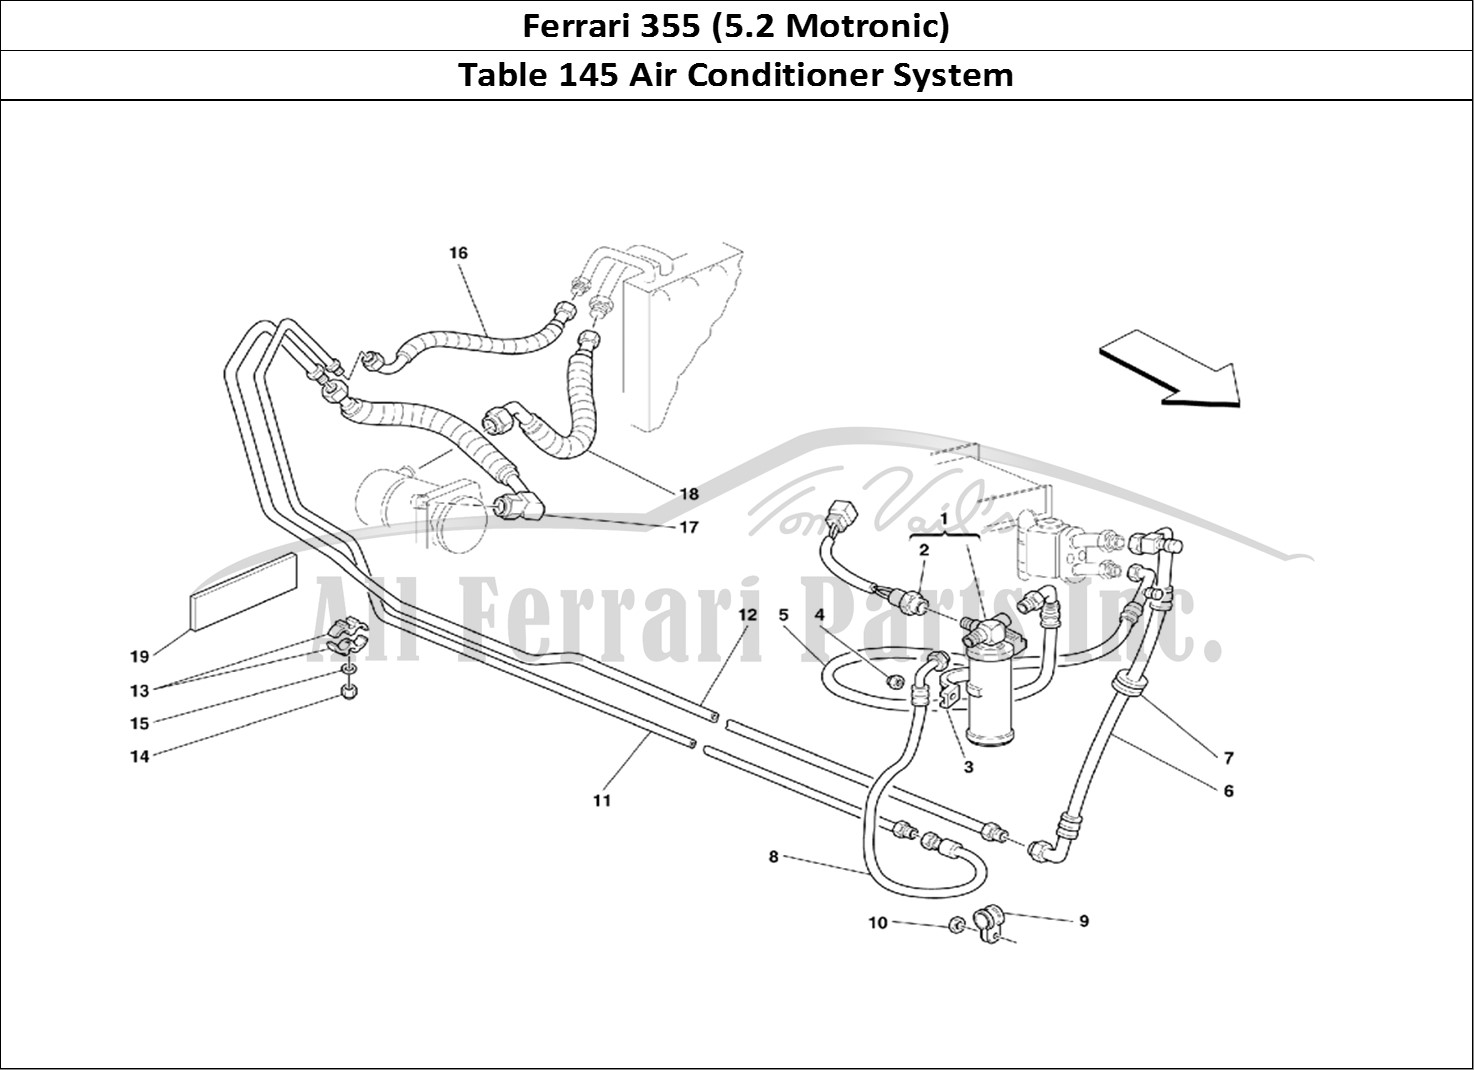 Ferrari Parts Ferrari 355 (5.2 Motronic) Page 145 Air Conditioning System